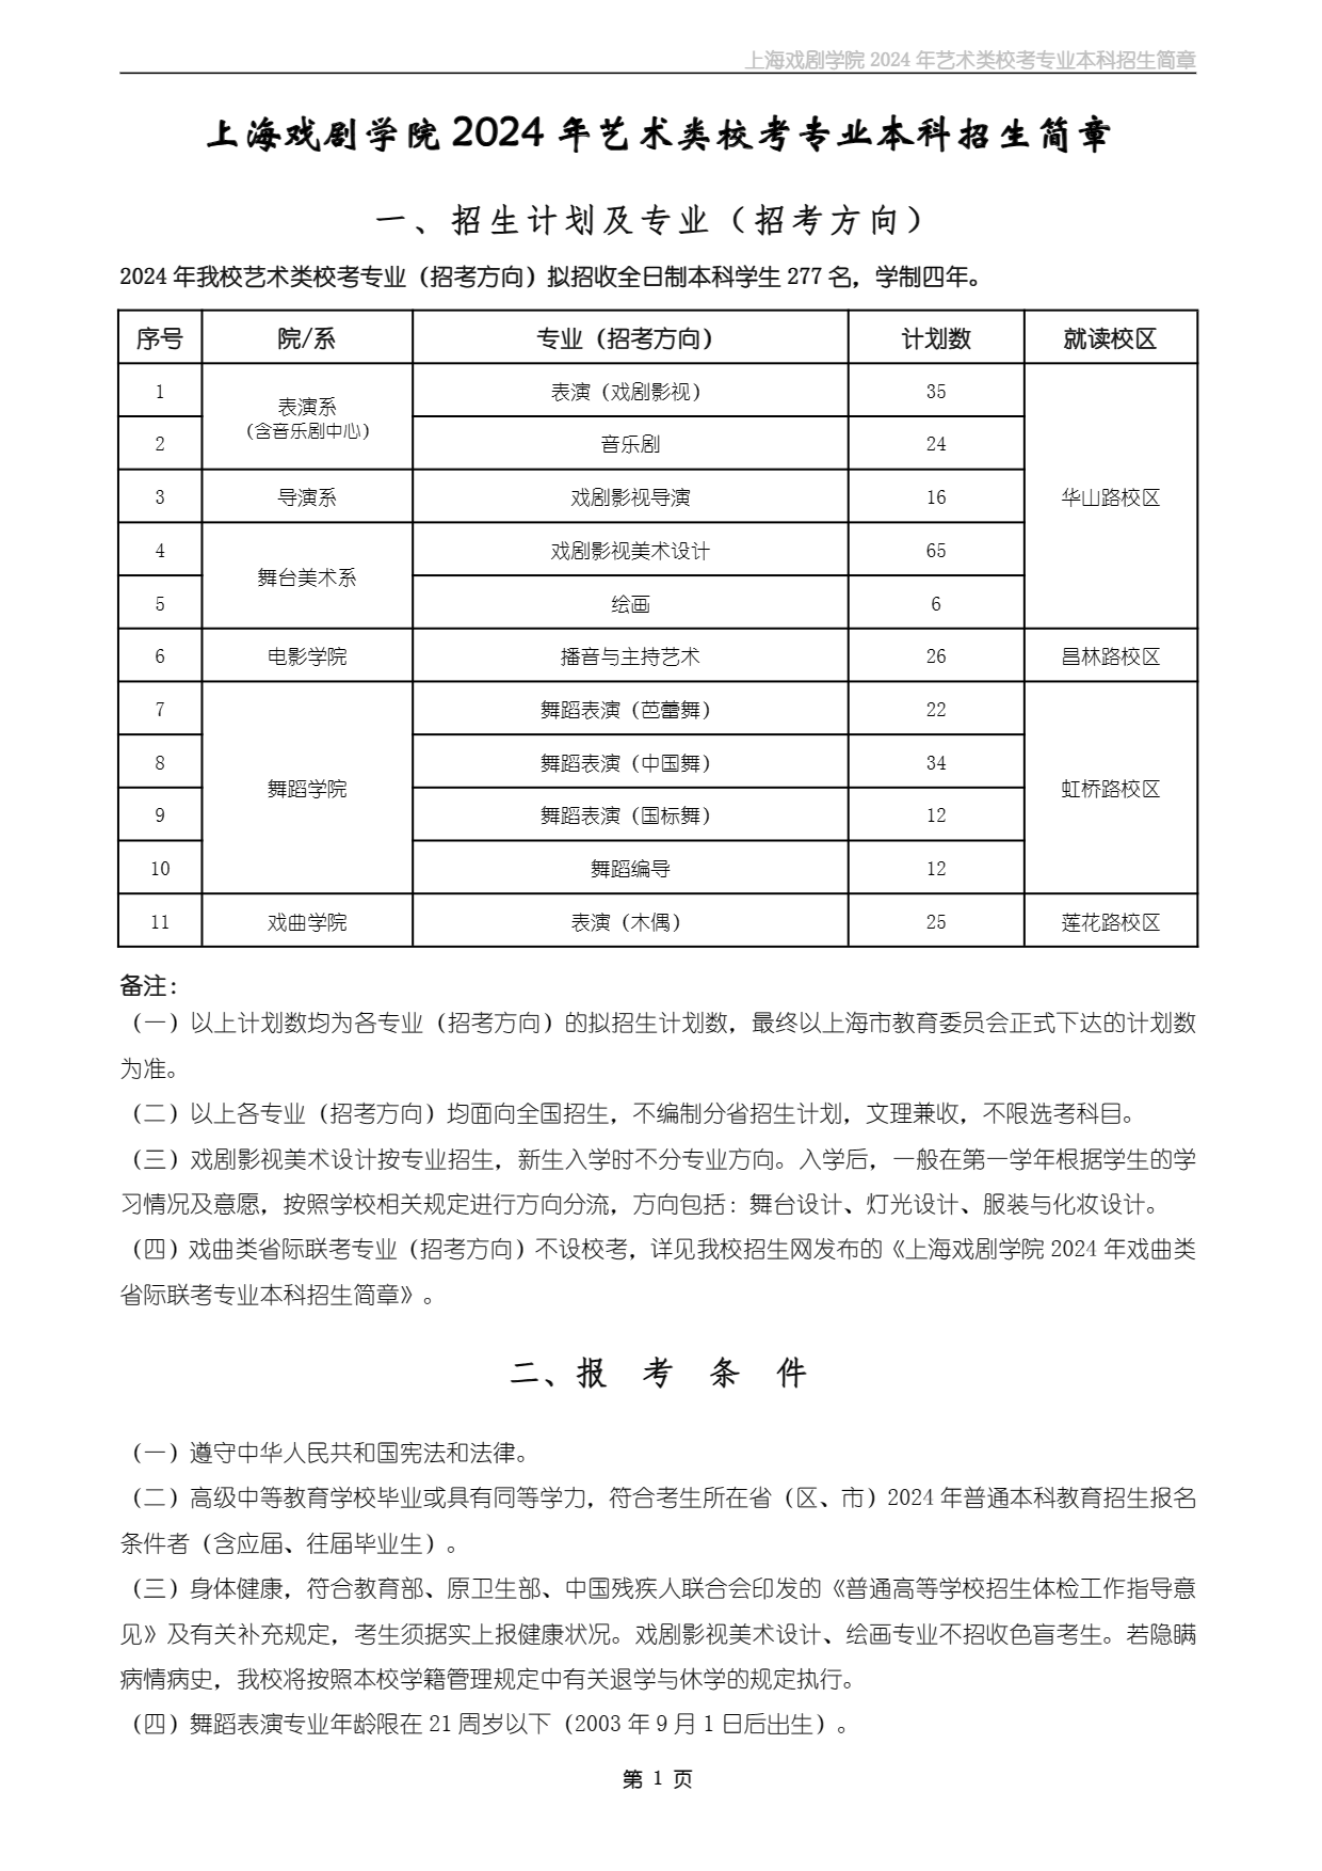 上海戏剧学院2024年艺术类校考专业本科招生简章_00.png